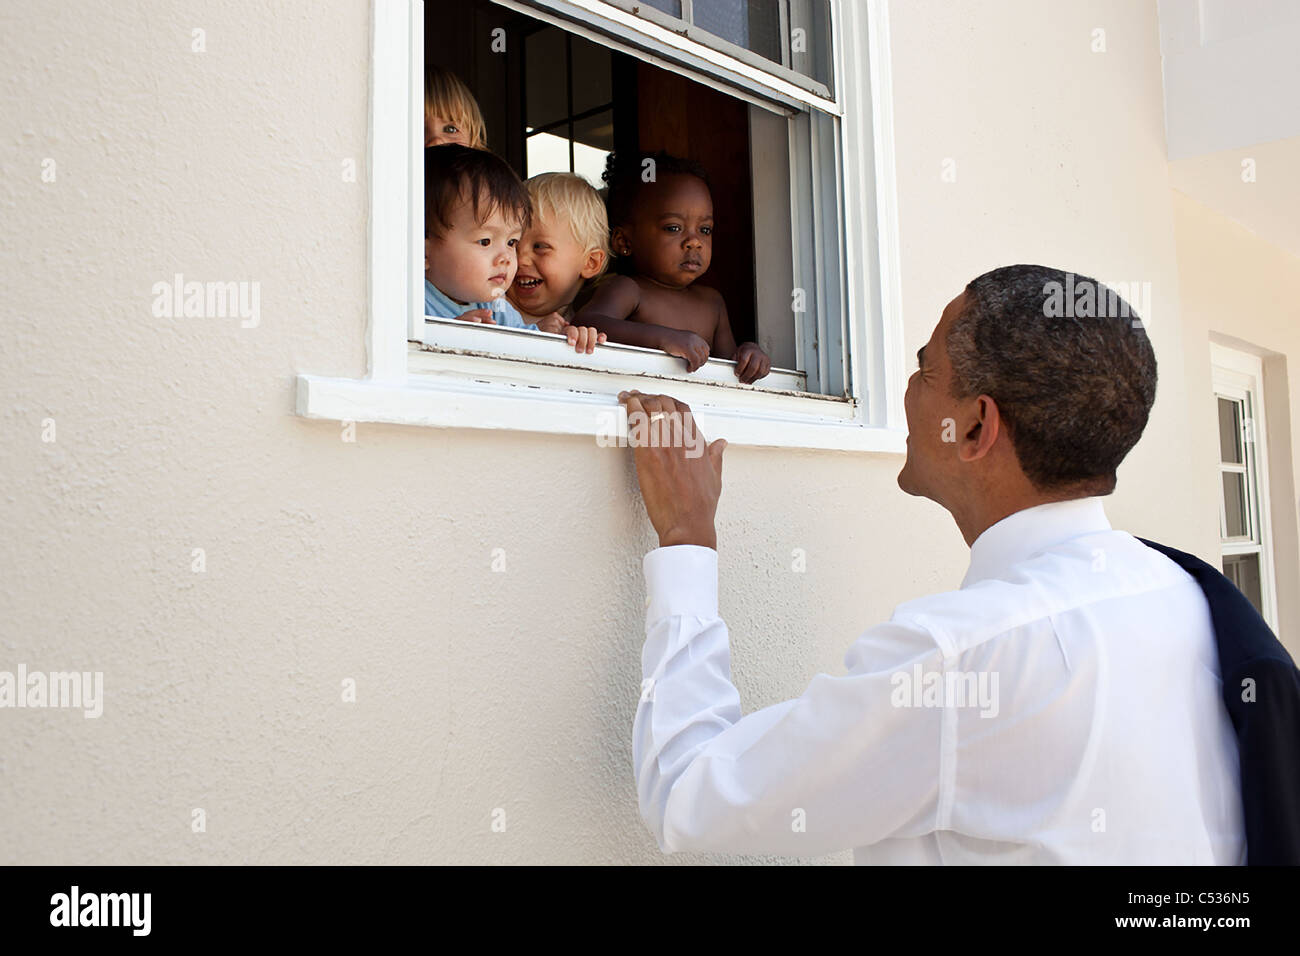 Präsident Barack Obama begrüßt Kinder am Tag Betreuungseinrichtung neben Tochter Sasha Schule in Bethesda, Md Stockfoto